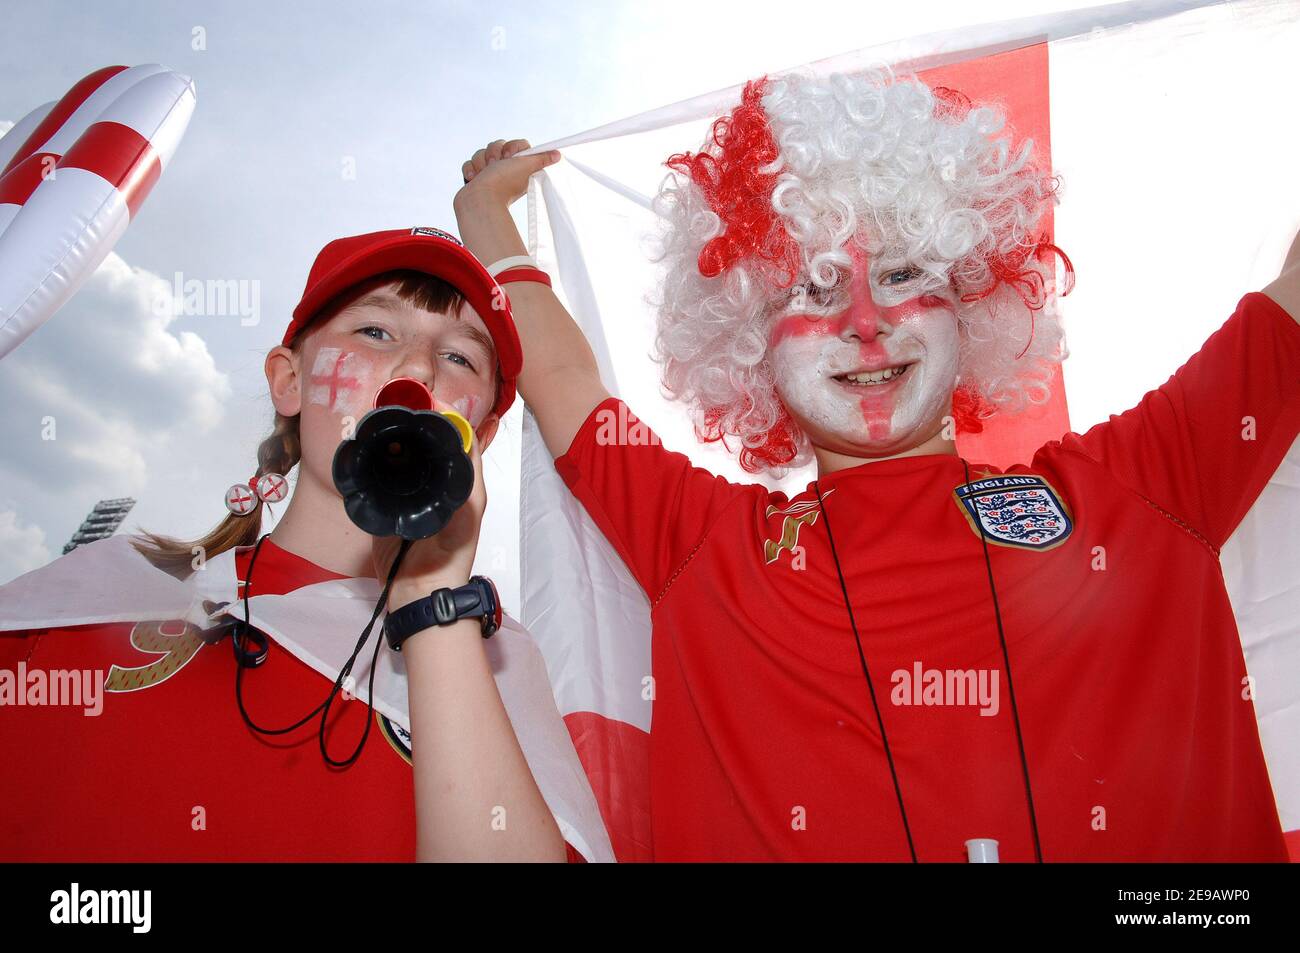 Les fans d'Angleterre photographiés avant la coupe du monde 2006, Groupe B, match Angleterre contre Trinité-et-Tobago à Nuremberg, Allemagne, le 15 juin 2006. Photo de Gouhier-Hahn-Orban/Cameleon/ABACAPRESS.COM Banque D'Images